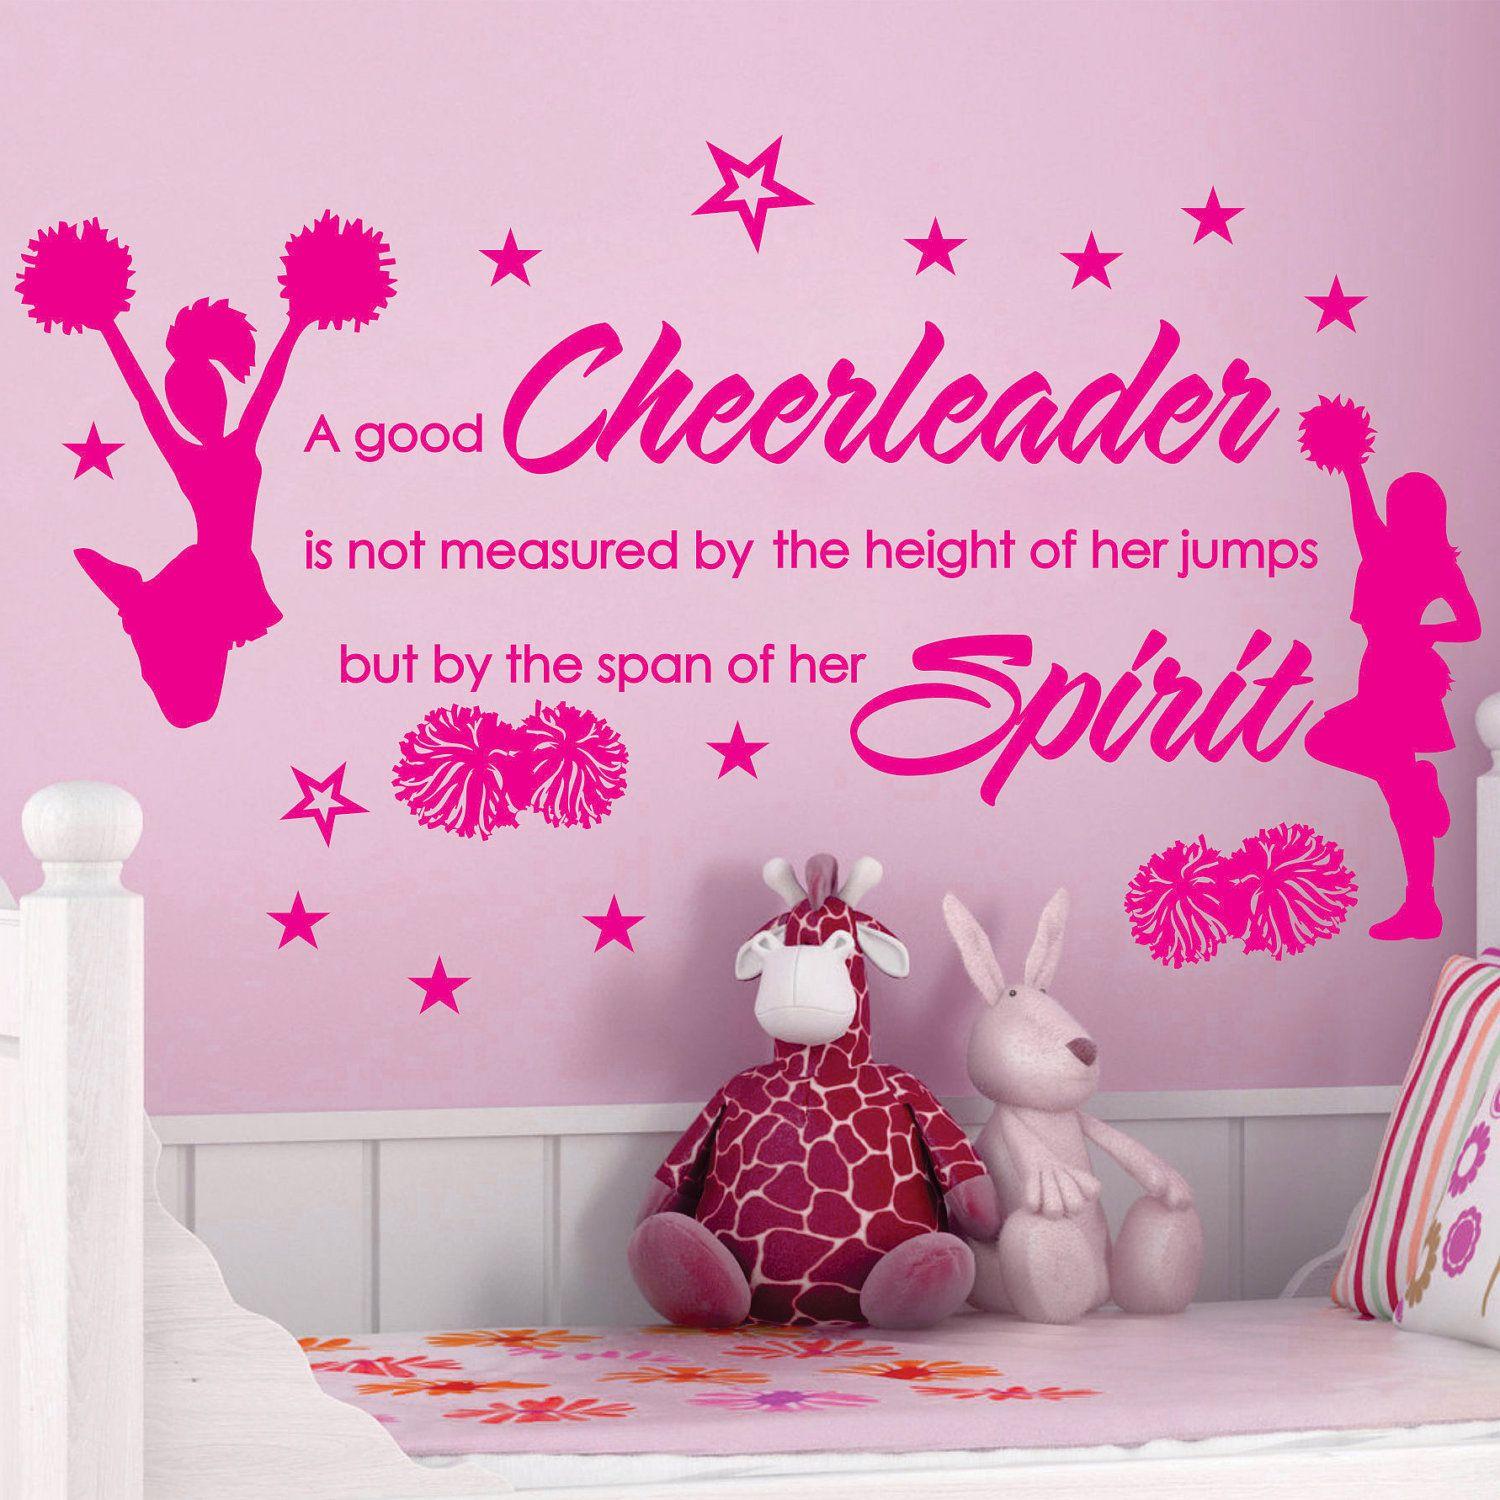 Cute Cheerleader Wallpapers Top Free Cute Cheerleader Backgrounds